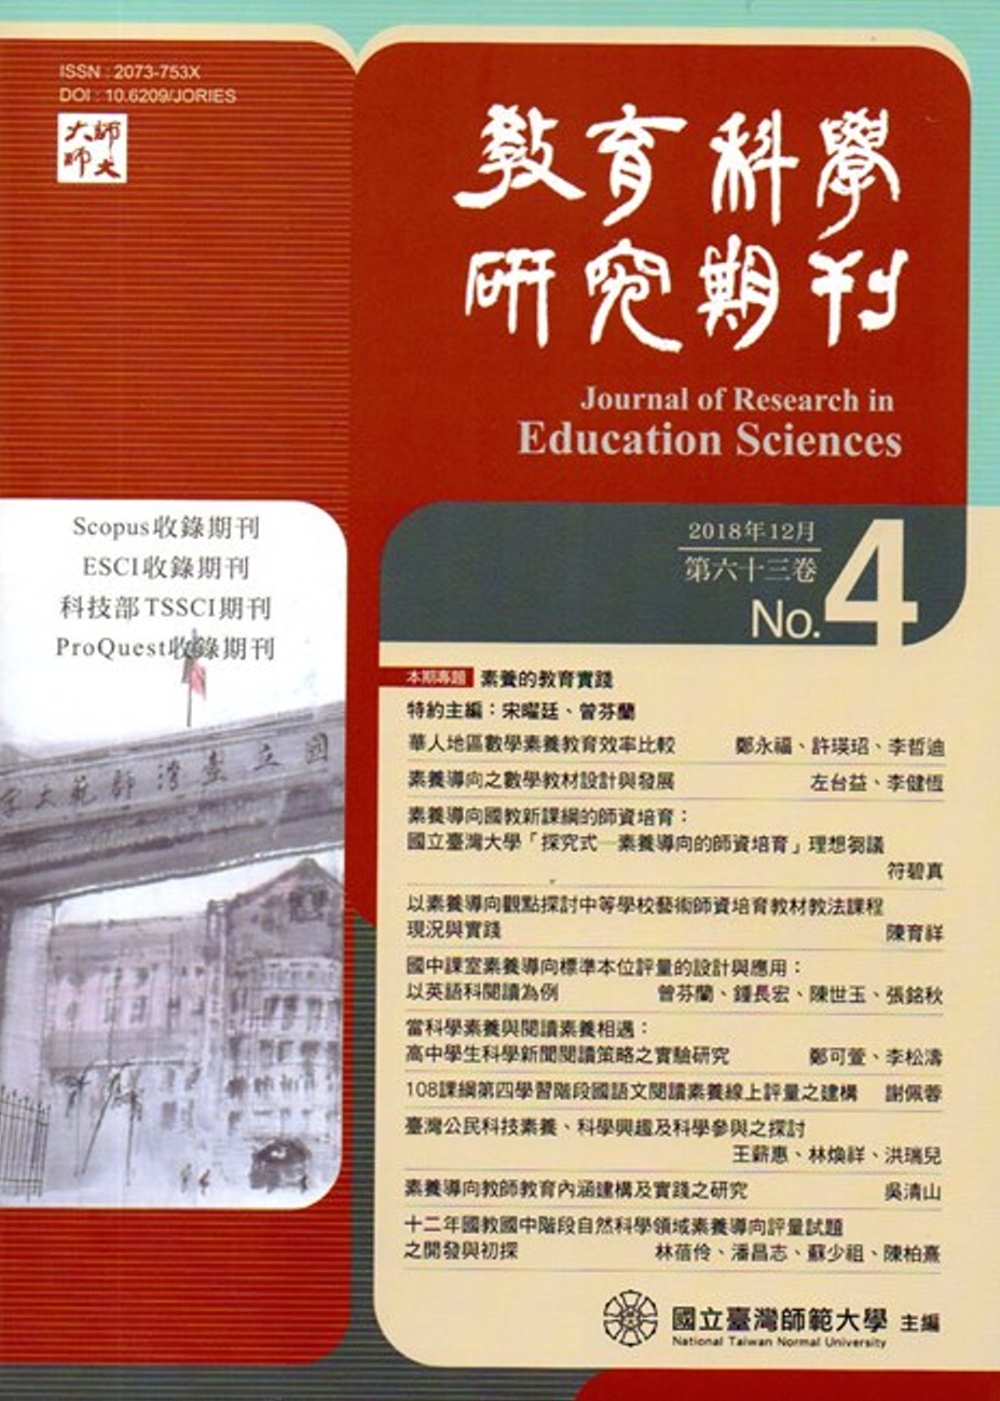 教育科學研究期刊第63卷第4期-2018.12